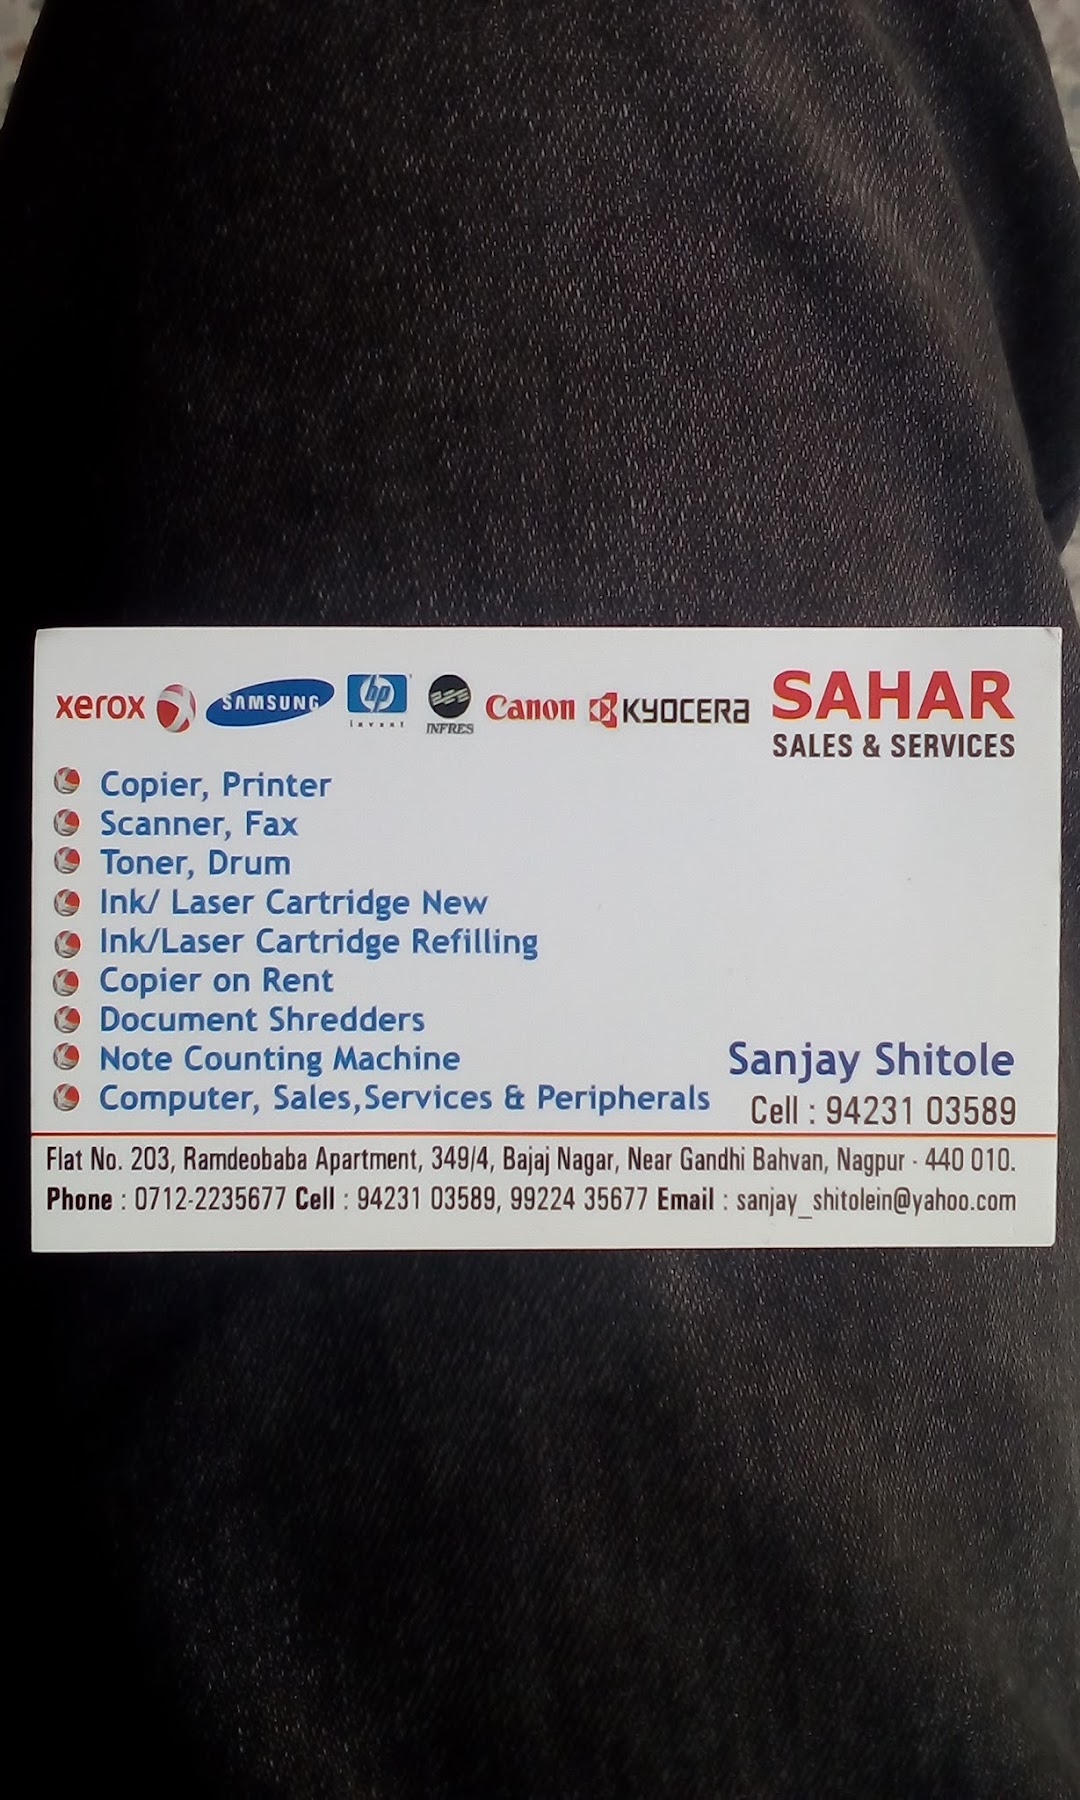 Sahar Sales & Services